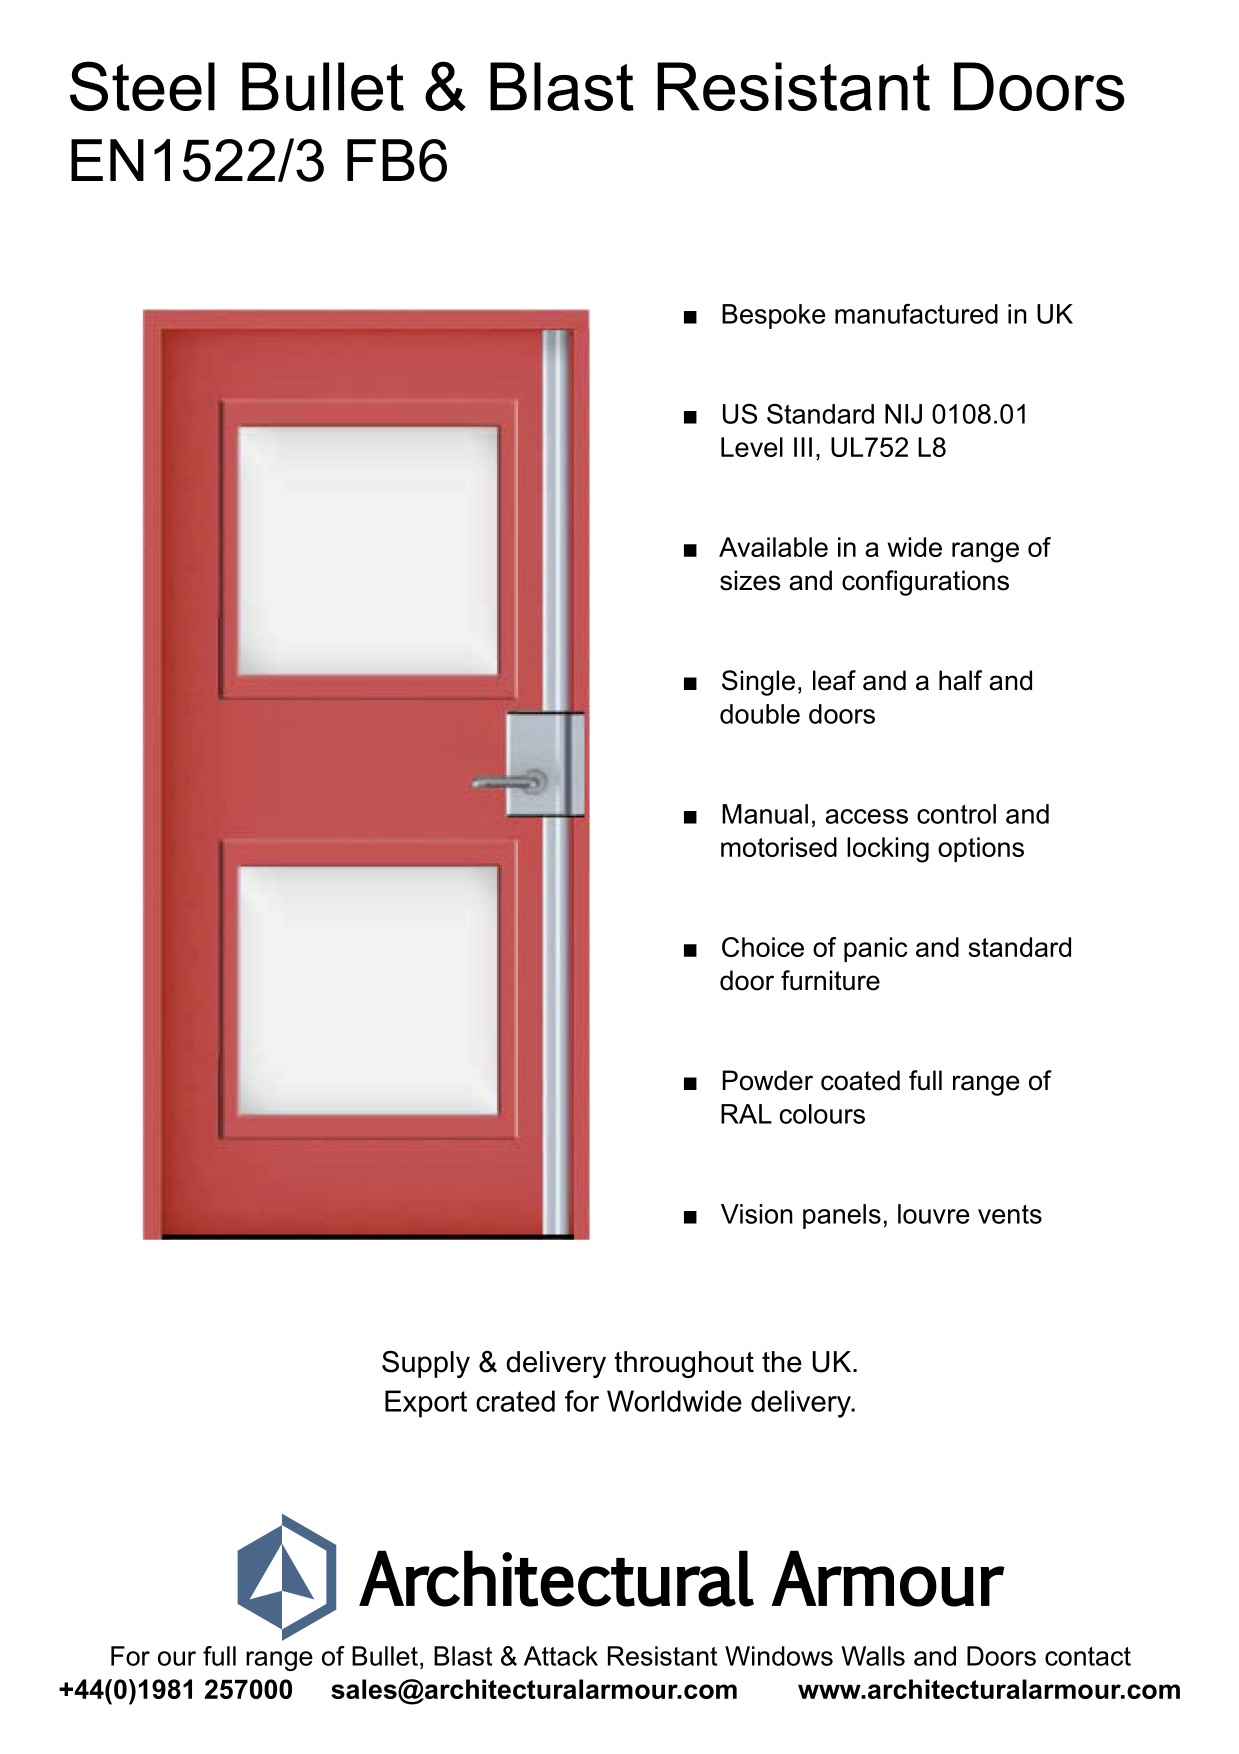 Bullet-and-Blast-Resistant-Steel-Doors-Vision-Panel-EN1522-3-FB6-BR6-UK